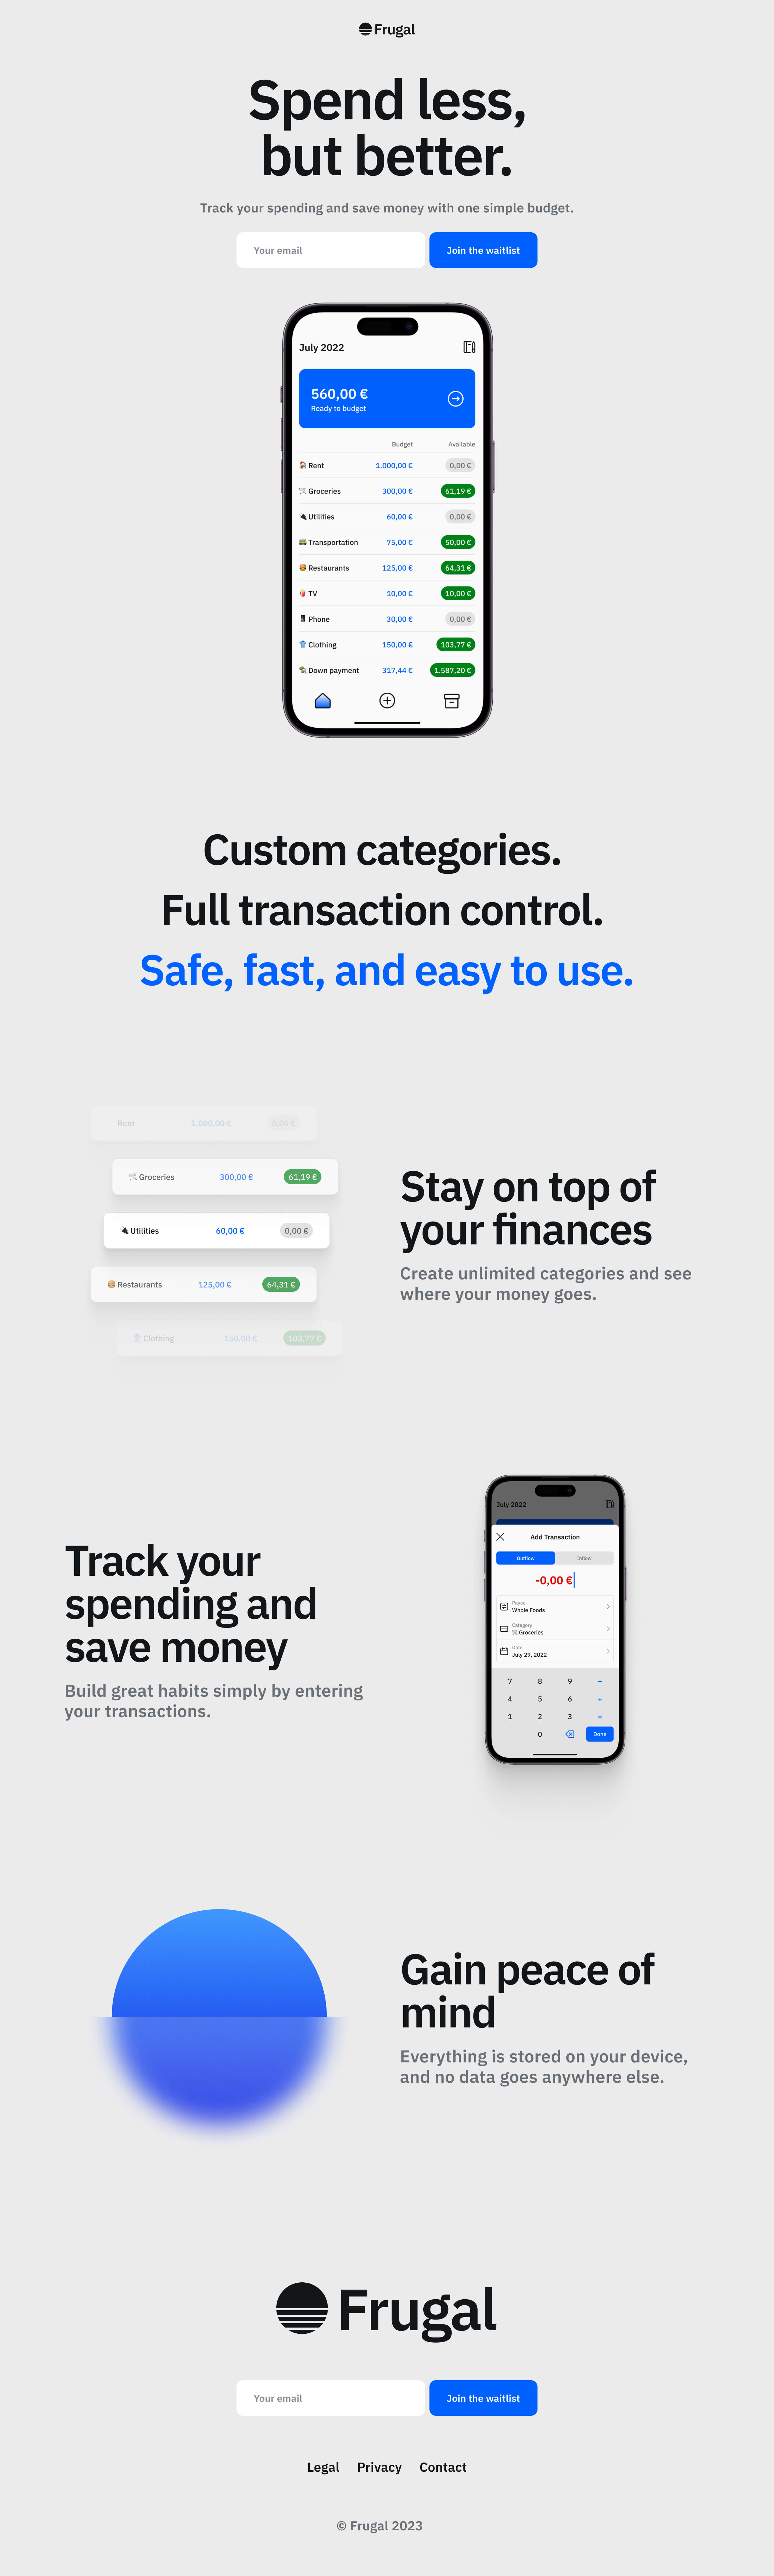 Landing page design for Frugal, a budget app